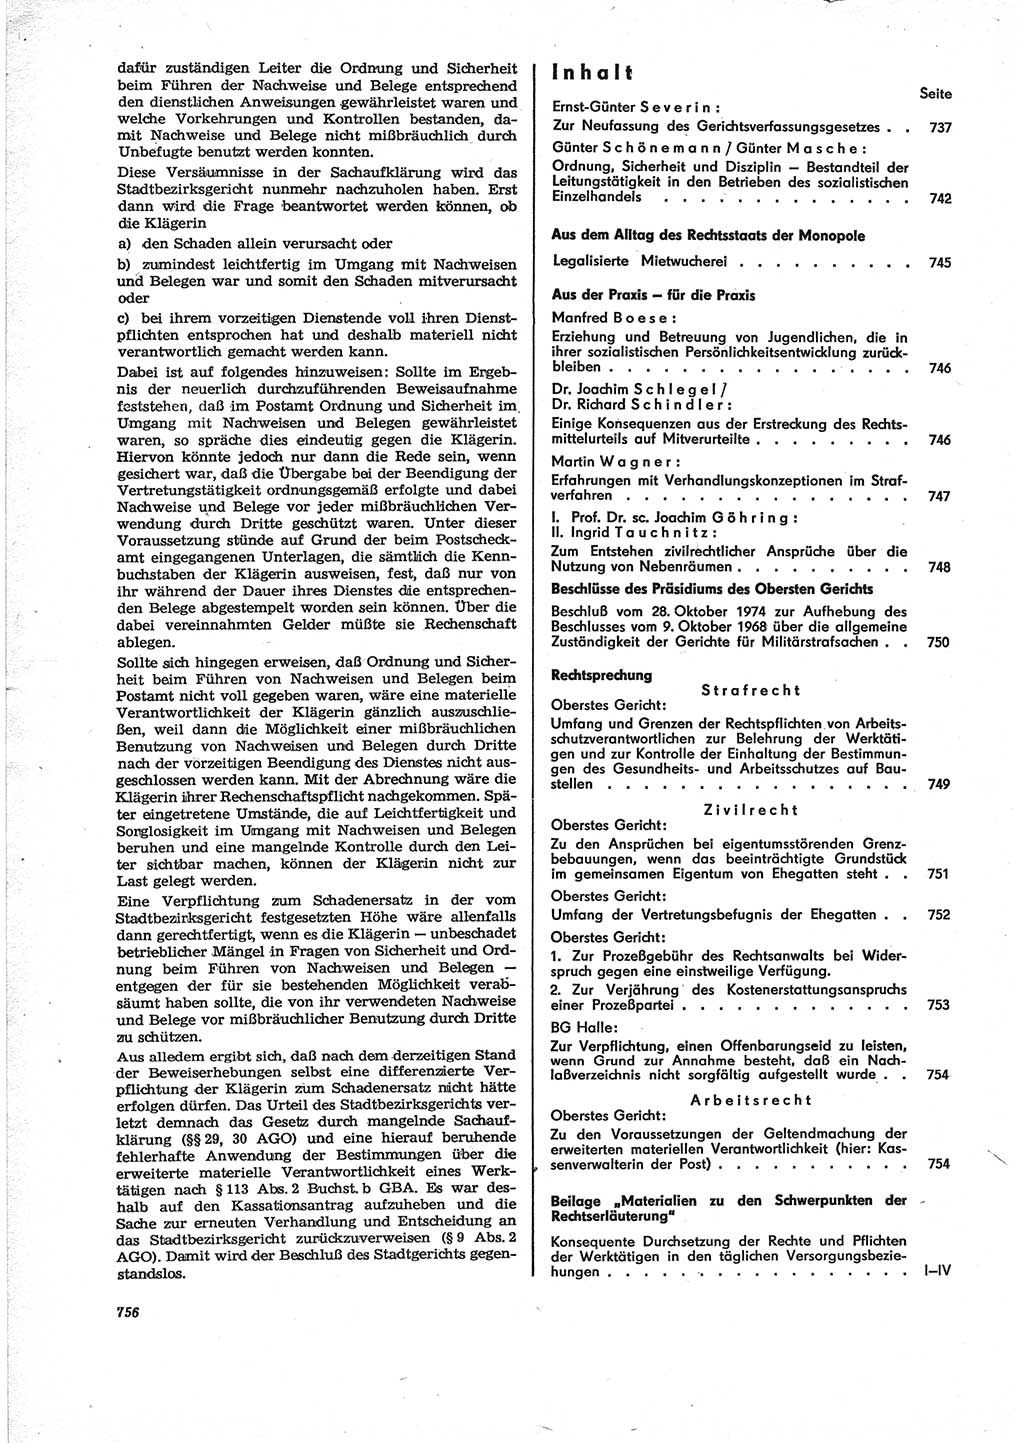 Neue Justiz (NJ), Zeitschrift für Recht und Rechtswissenschaft [Deutsche Demokratische Republik (DDR)], 28. Jahrgang 1974, Seite 756 (NJ DDR 1974, S. 756)